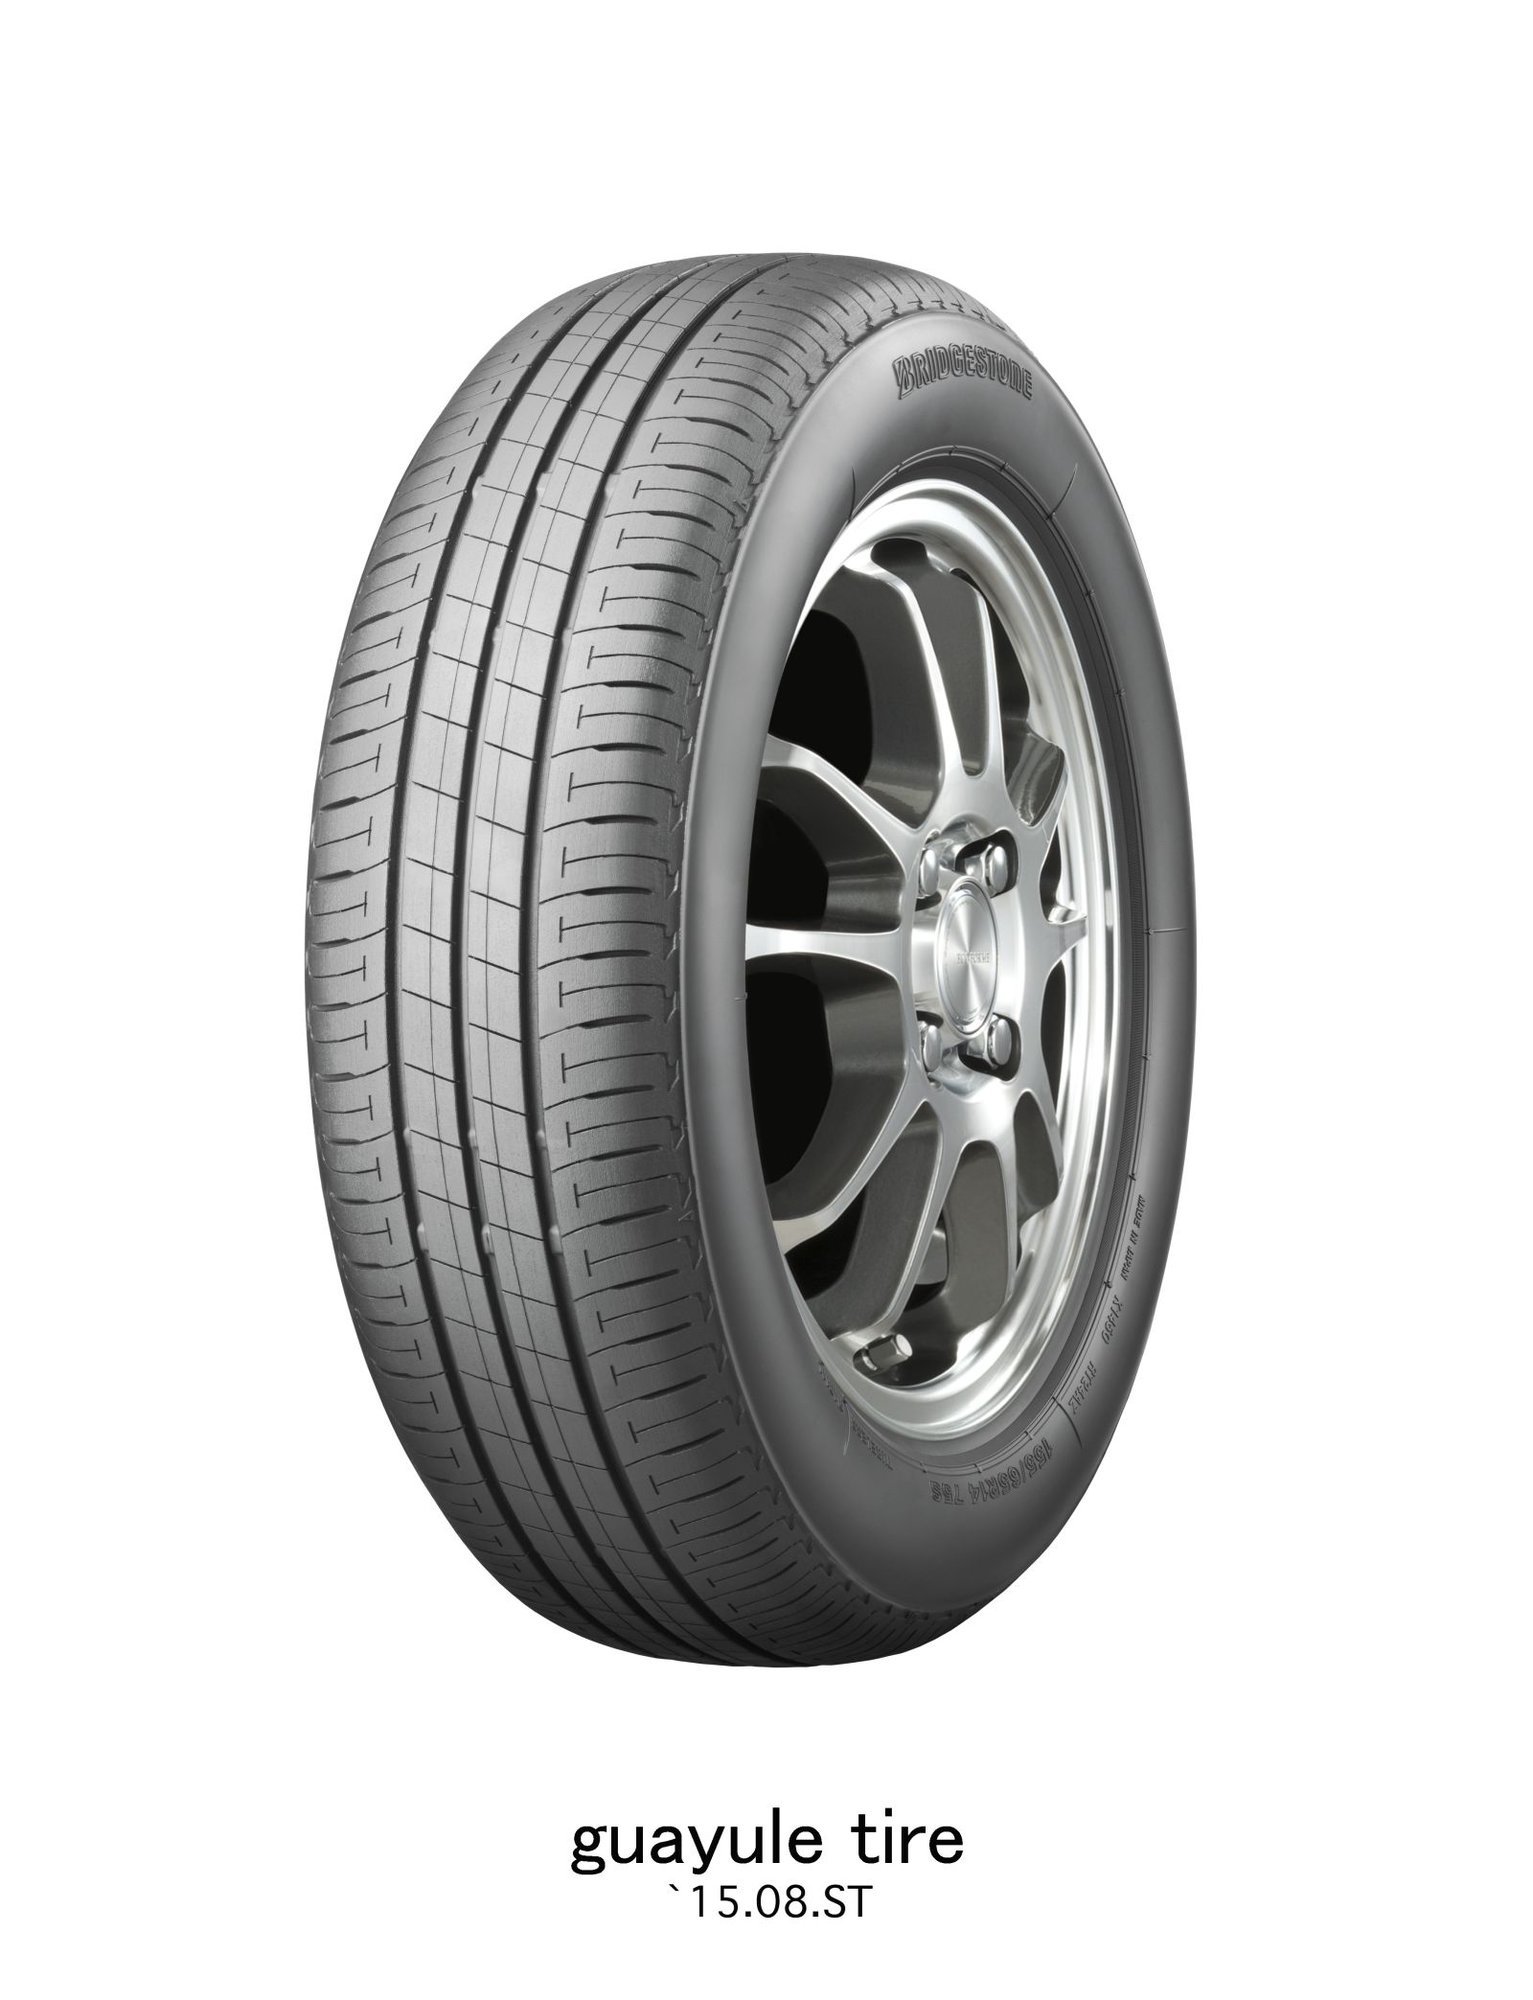 Bridgestone a jejich nové pneumatiky